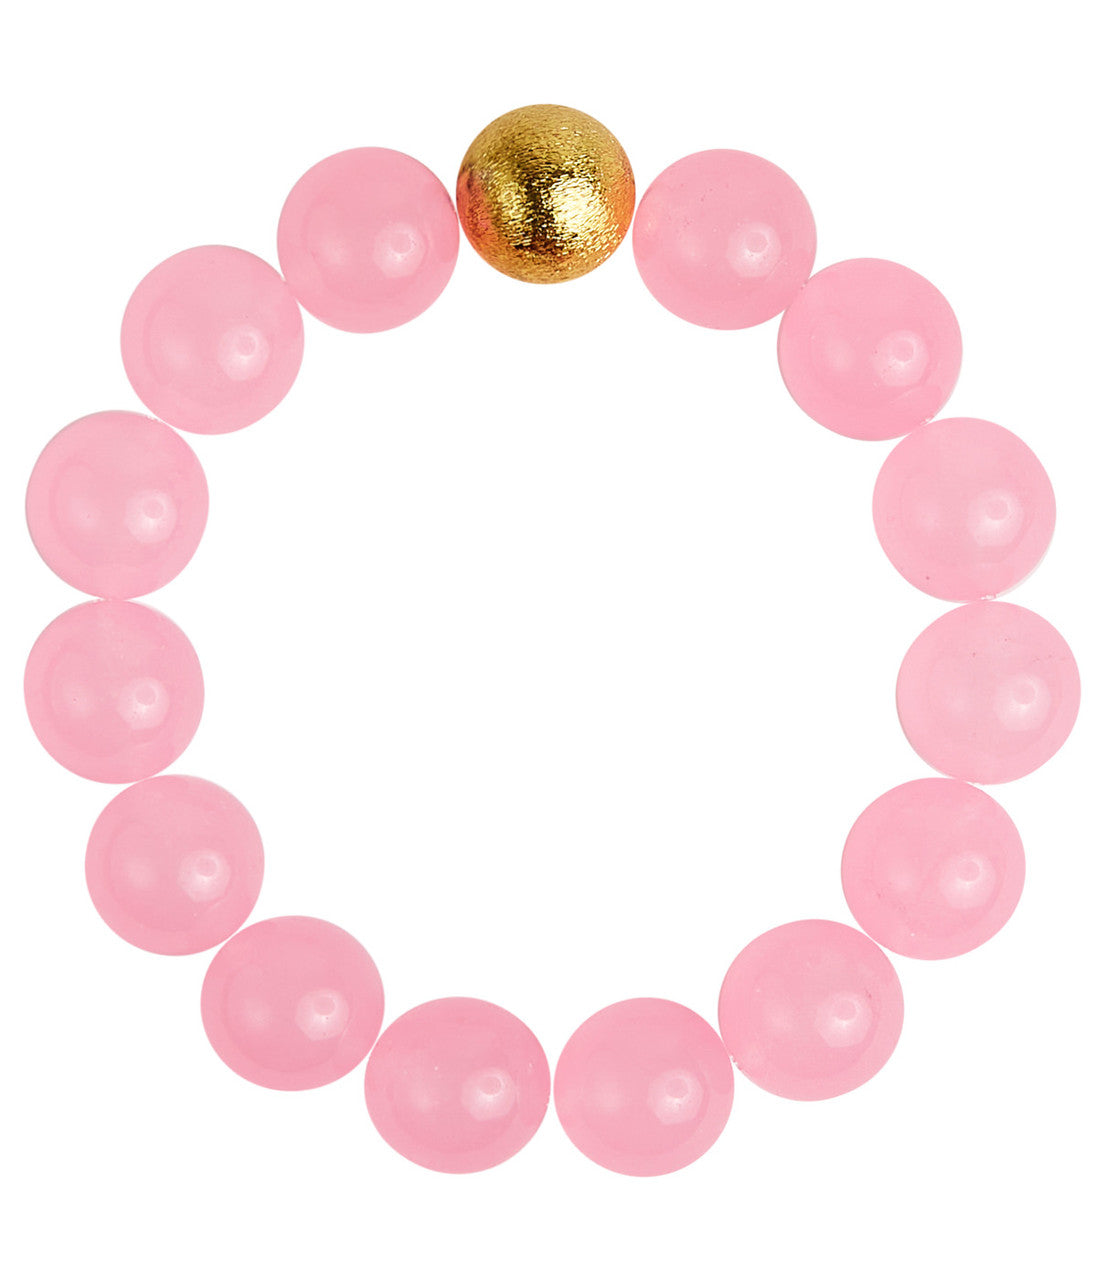 Georgia Beaded Bracelet - Quartz, Assorted Colors